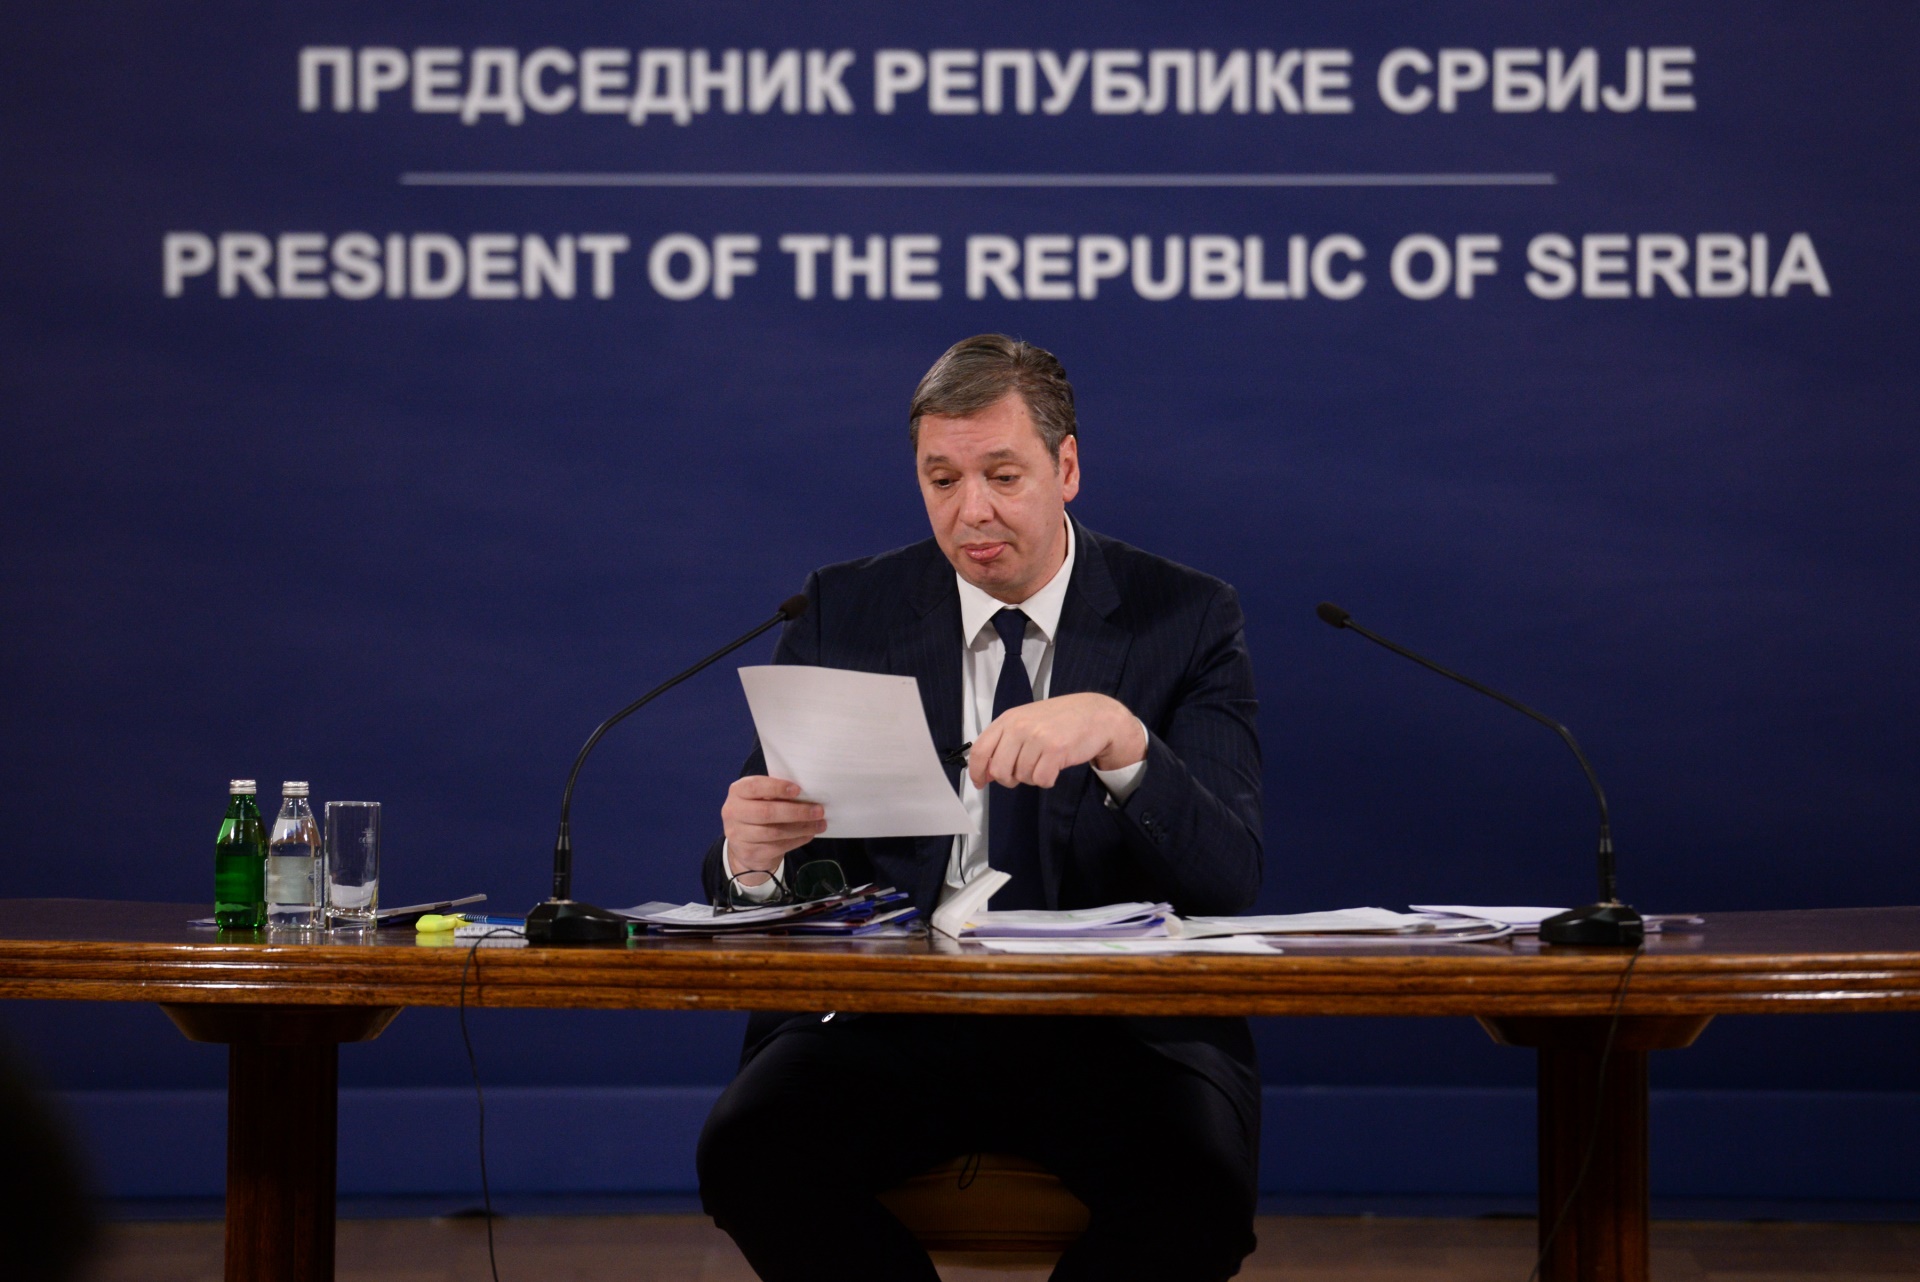 Predsednik Srbije Aleksandar Vucic devet dozvola koje je Rio Tintu izdala bivsa vlast